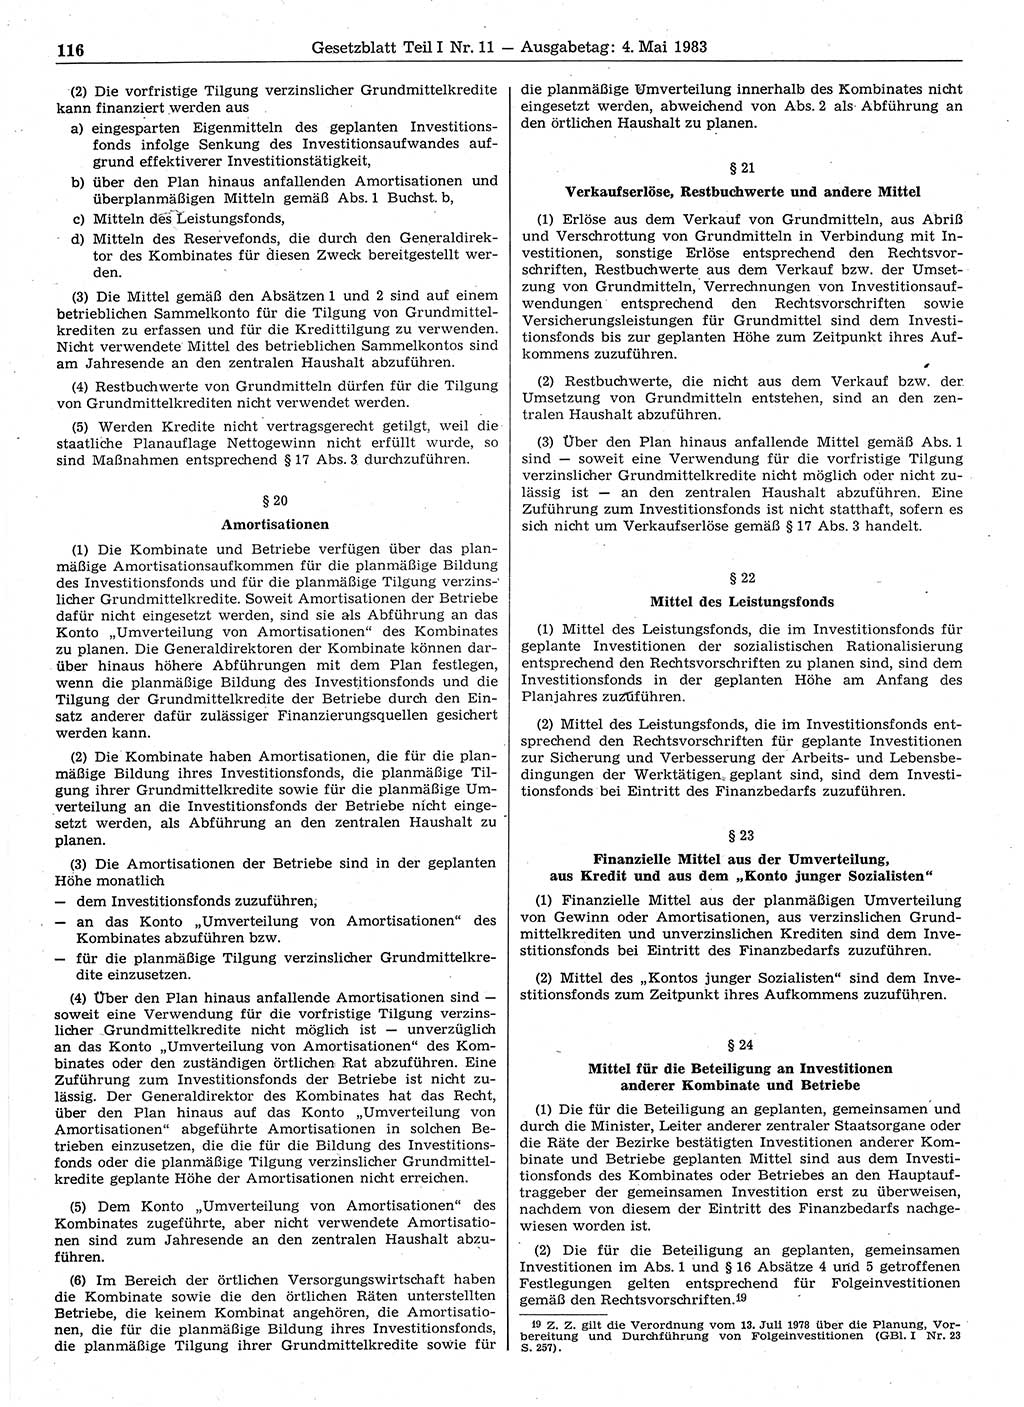 Gesetzblatt (GBl.) der Deutschen Demokratischen Republik (DDR) Teil Ⅰ 1983, Seite 116 (GBl. DDR Ⅰ 1983, S. 116)